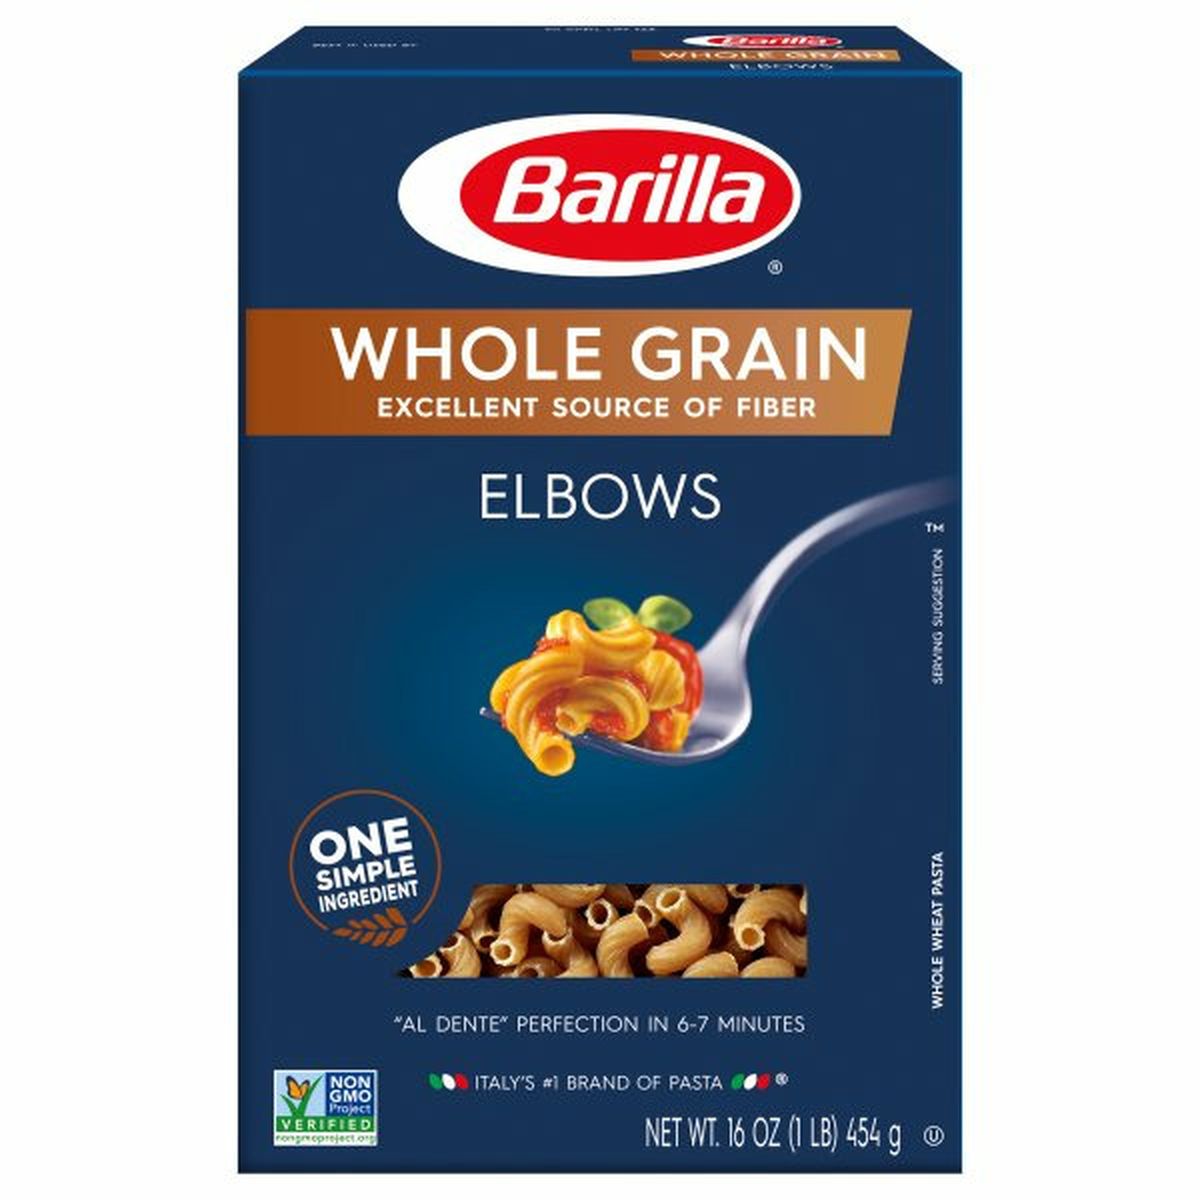 Calories in Barillas Elbows, Whole Grain